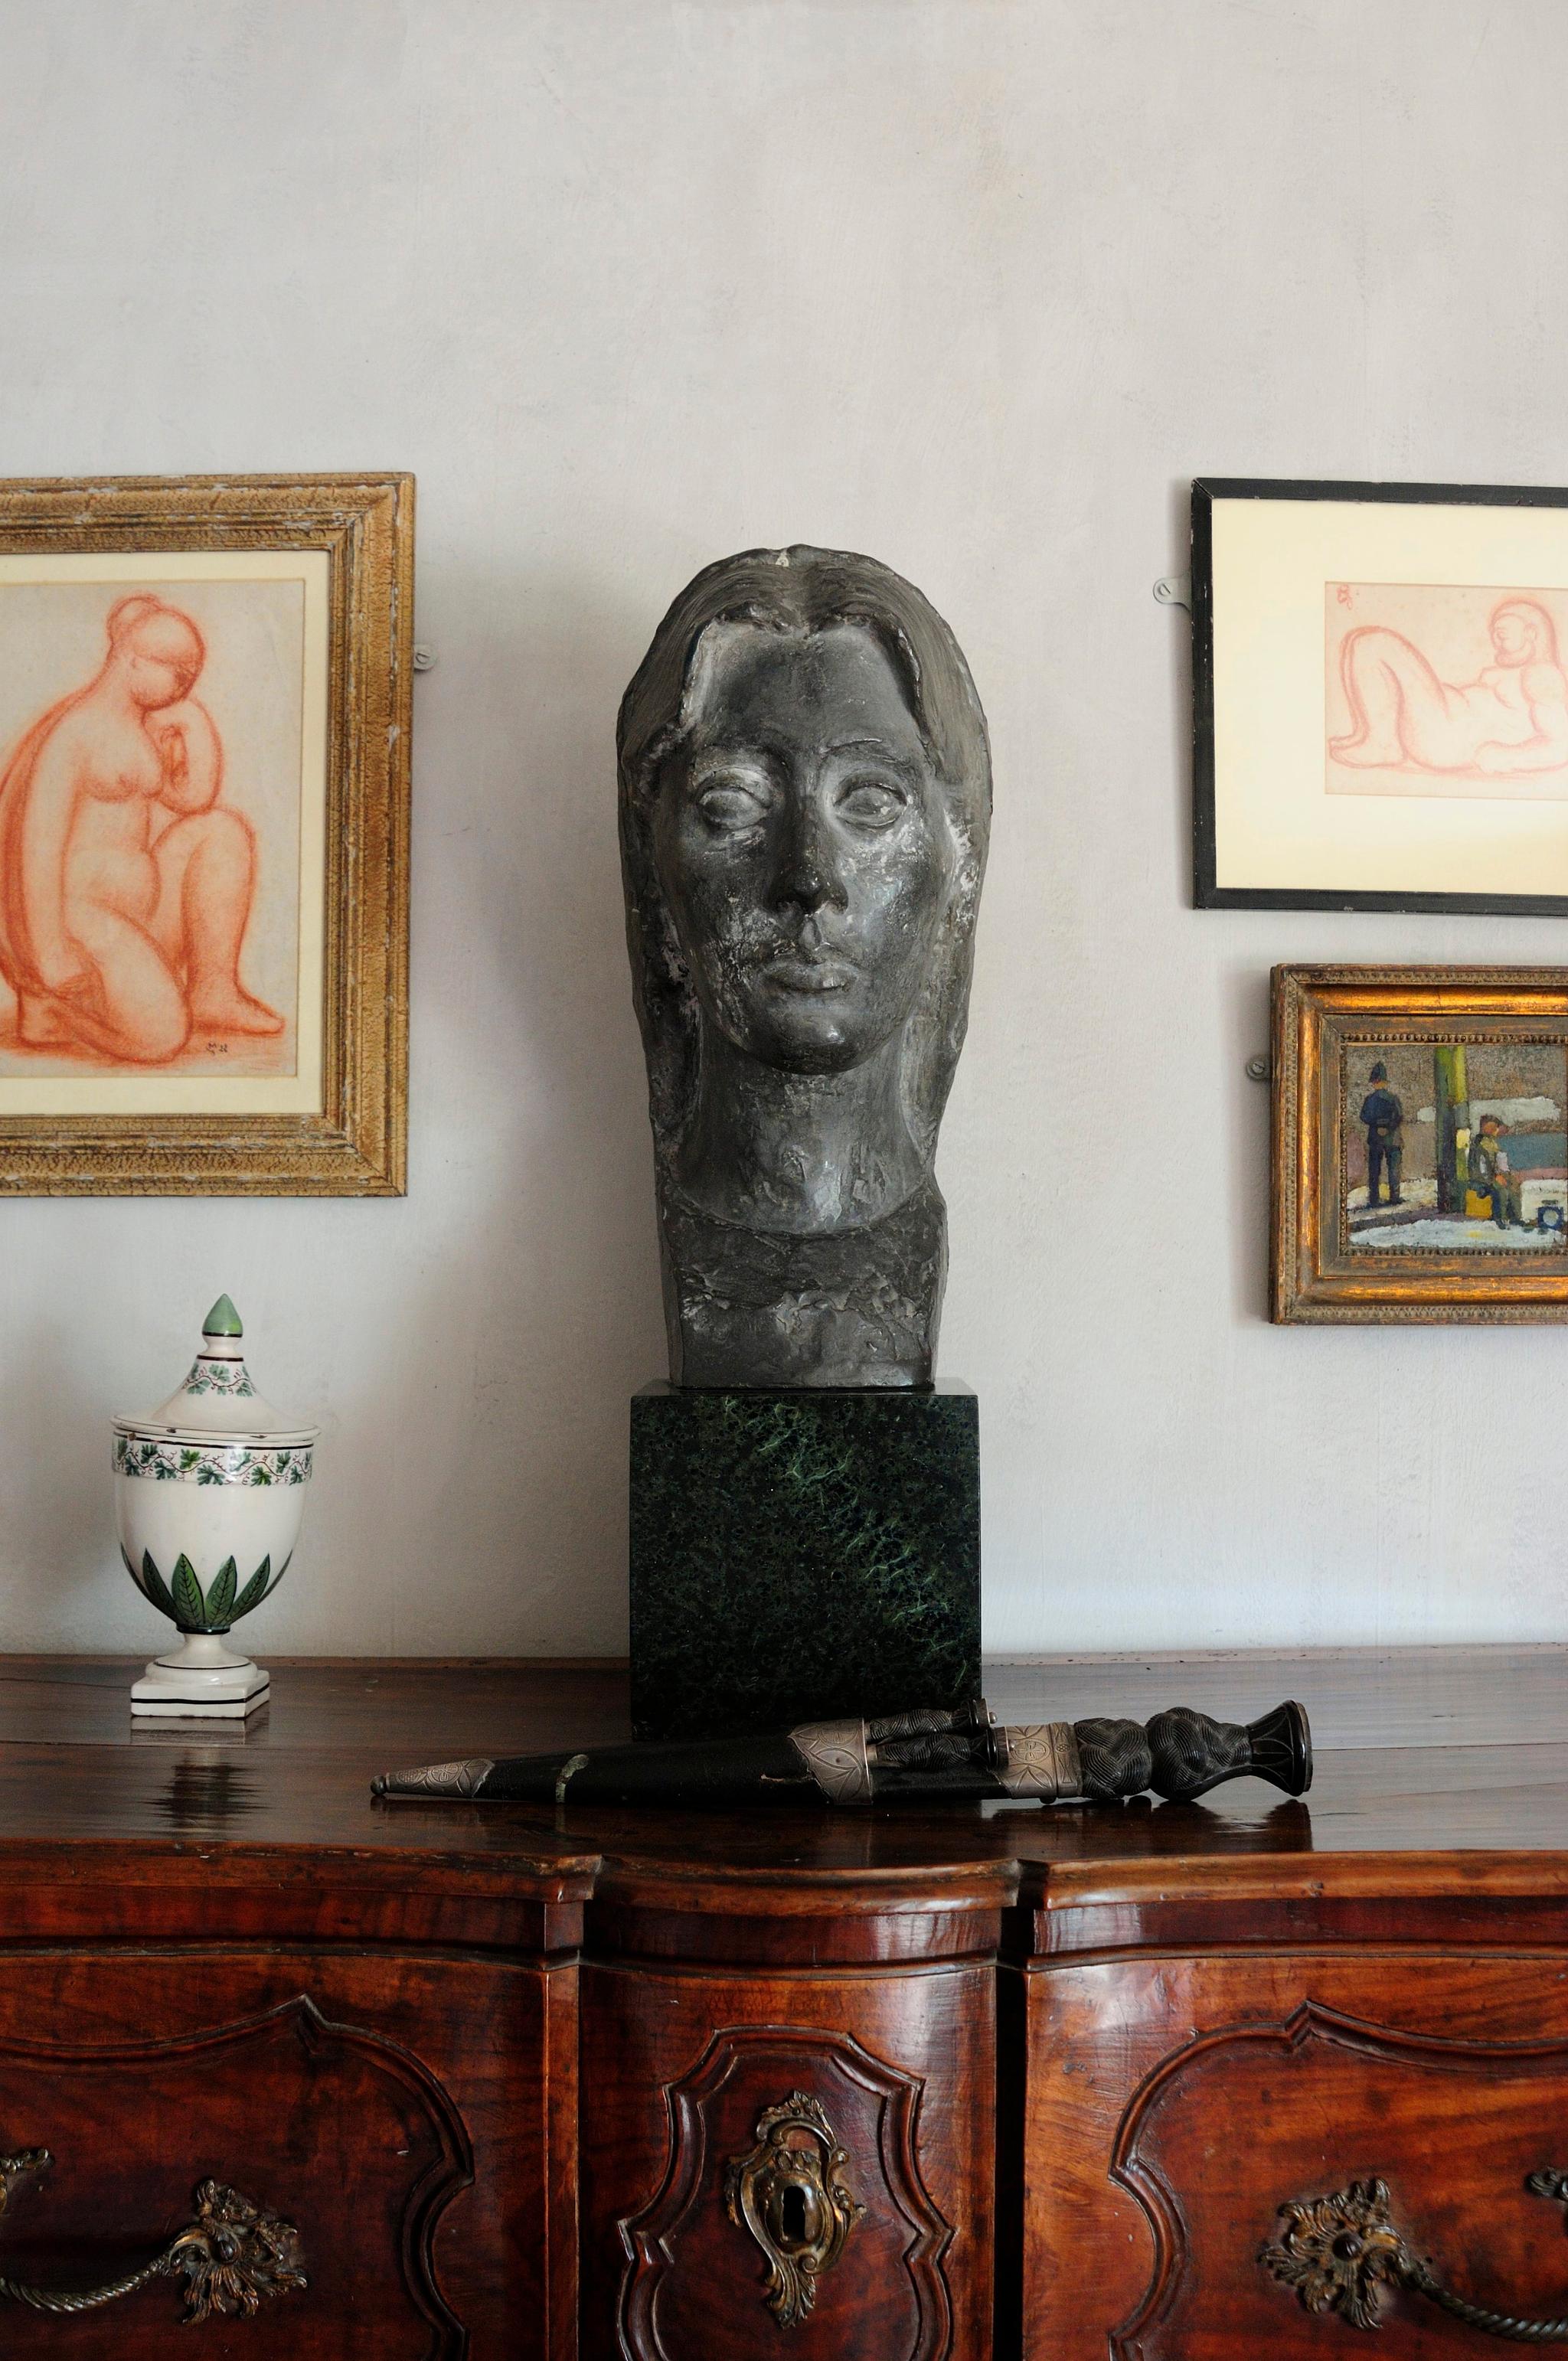  KUNSTSAMLING: Skulpturen av Vanessa Bell er laget av Marcel Gimond, de røde kritt-tegningene er også hans arbeid.  